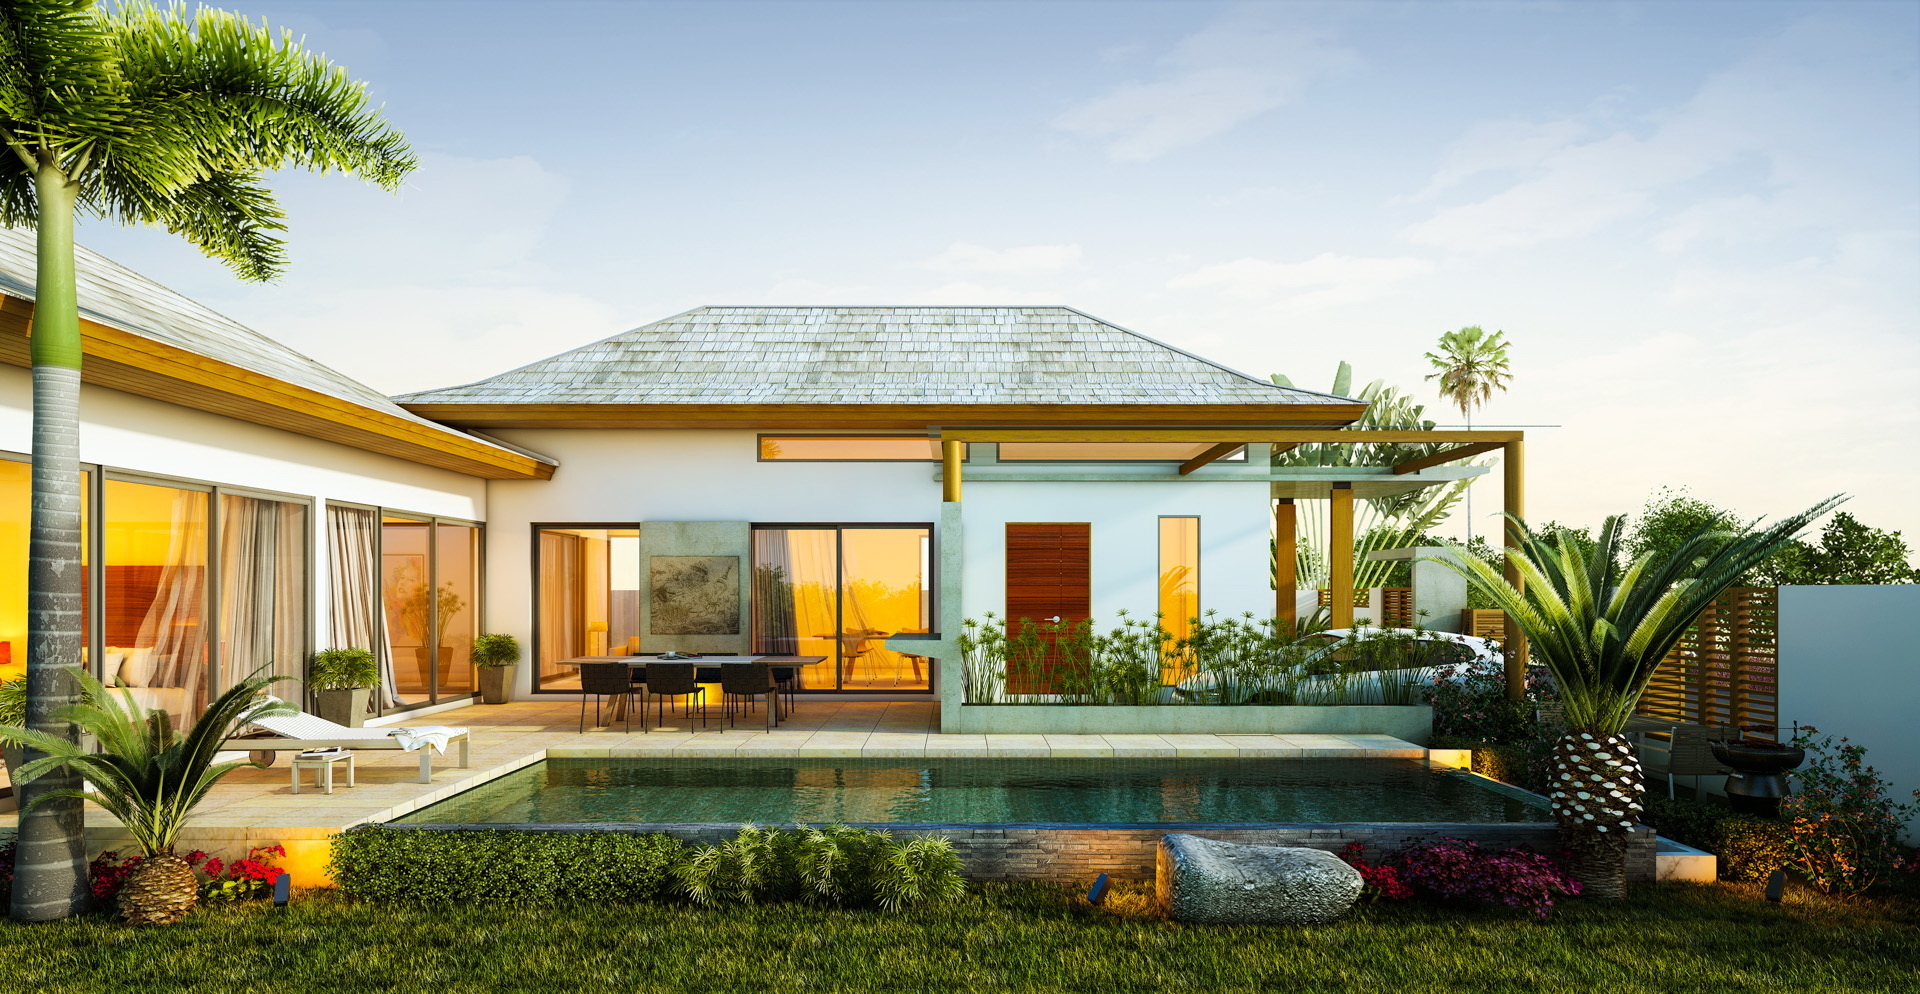 Tropical Island Homes Designs - Desain Rumah Tropis Mewah - HD Wallpaper 